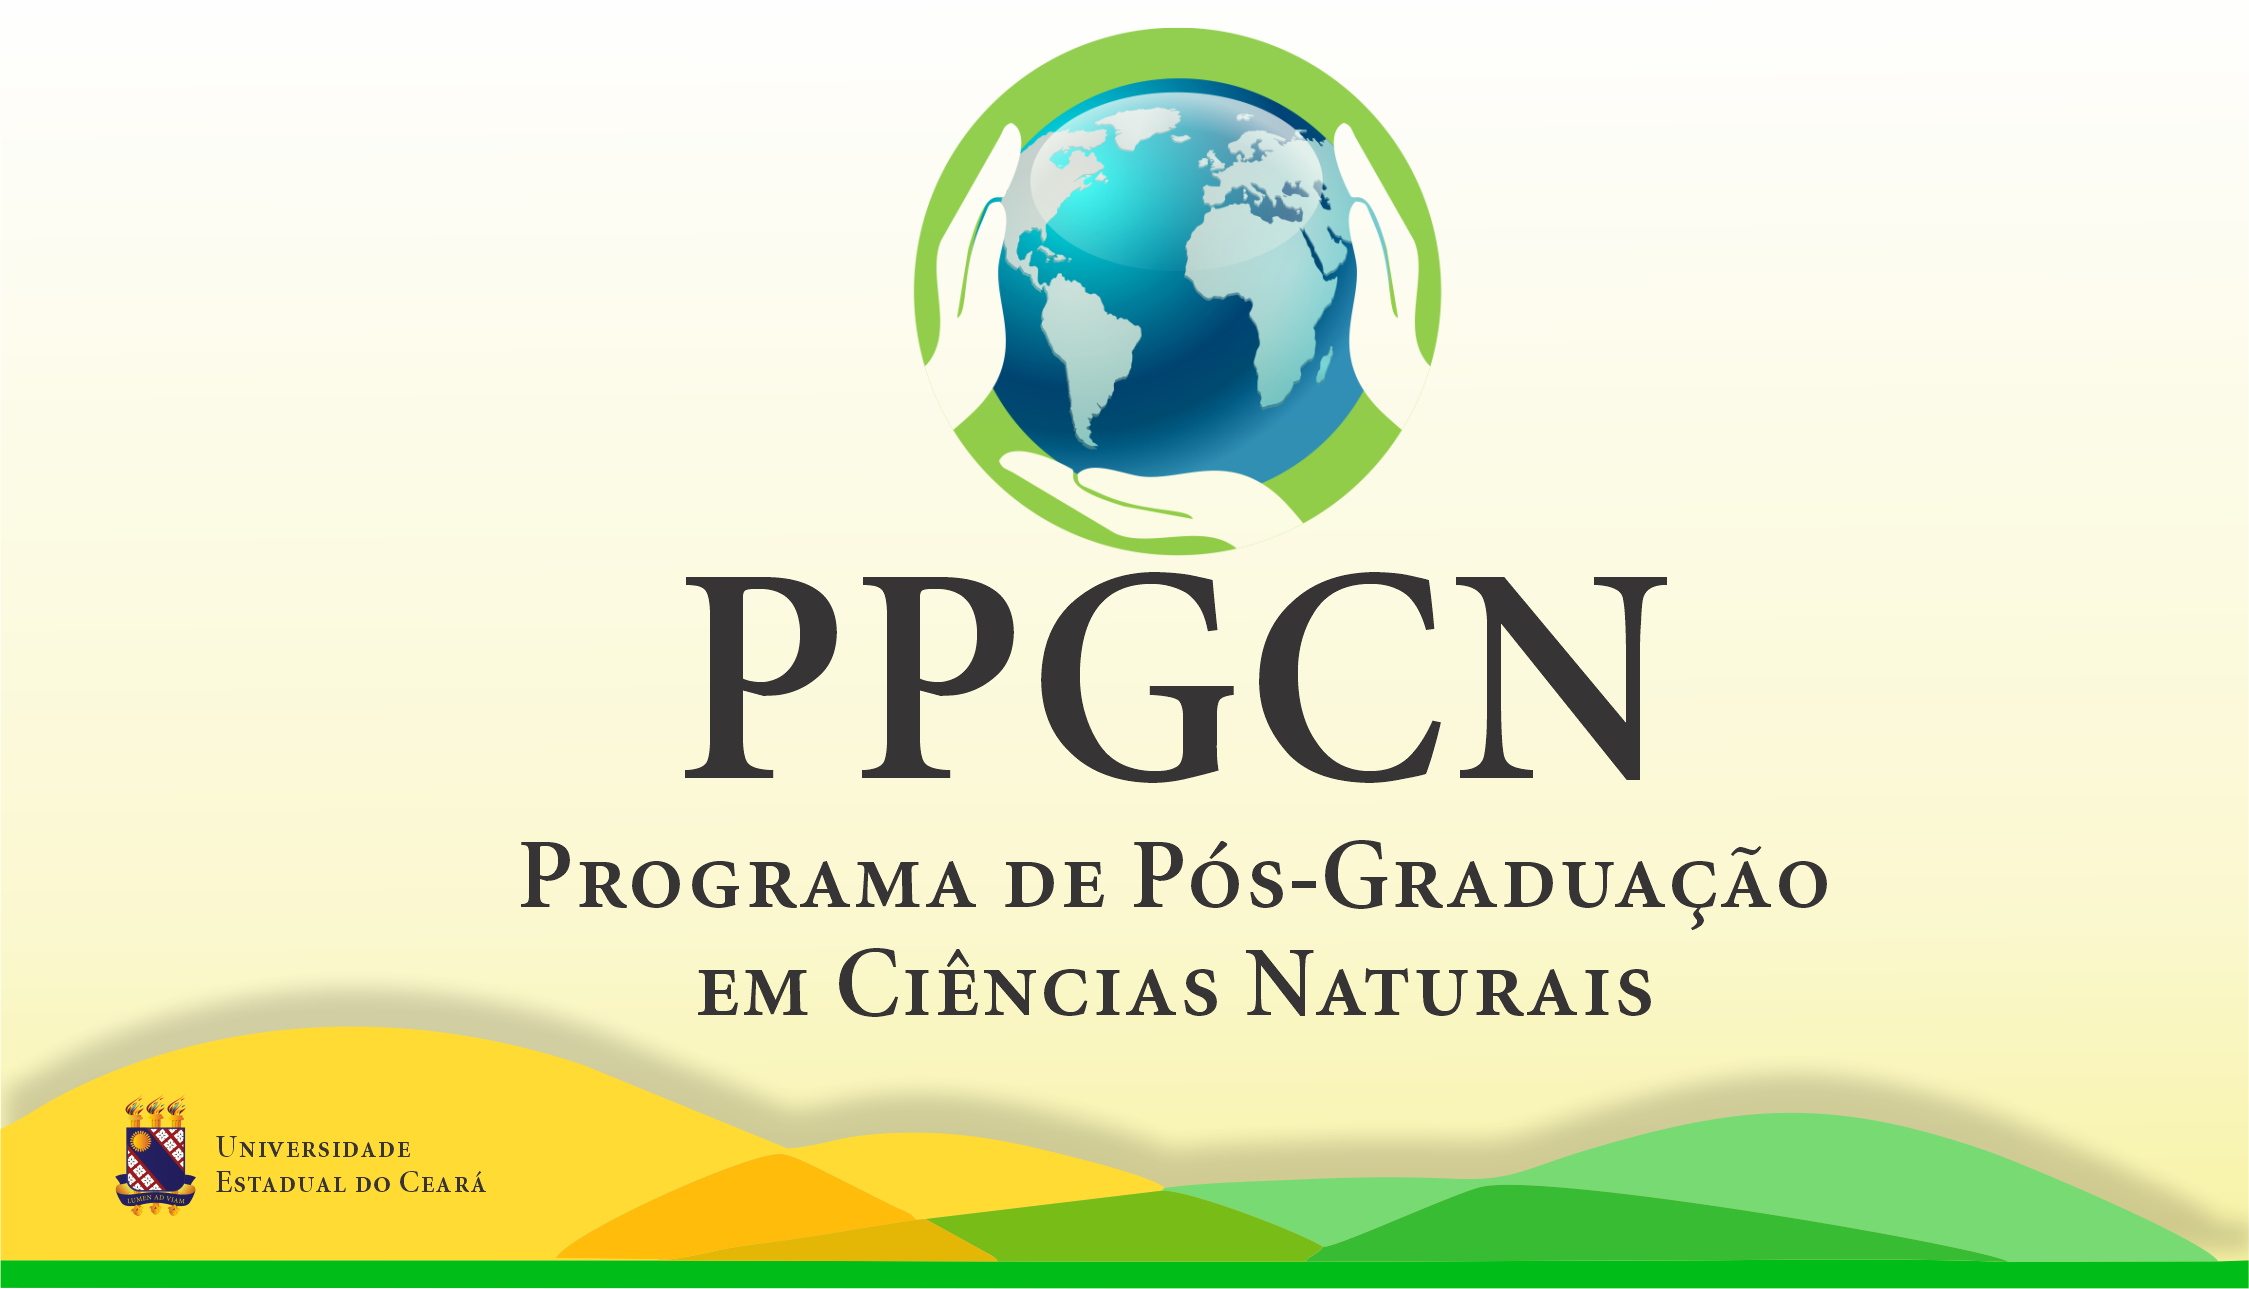 Programa de Pós-Graduação em Ciências Naturais